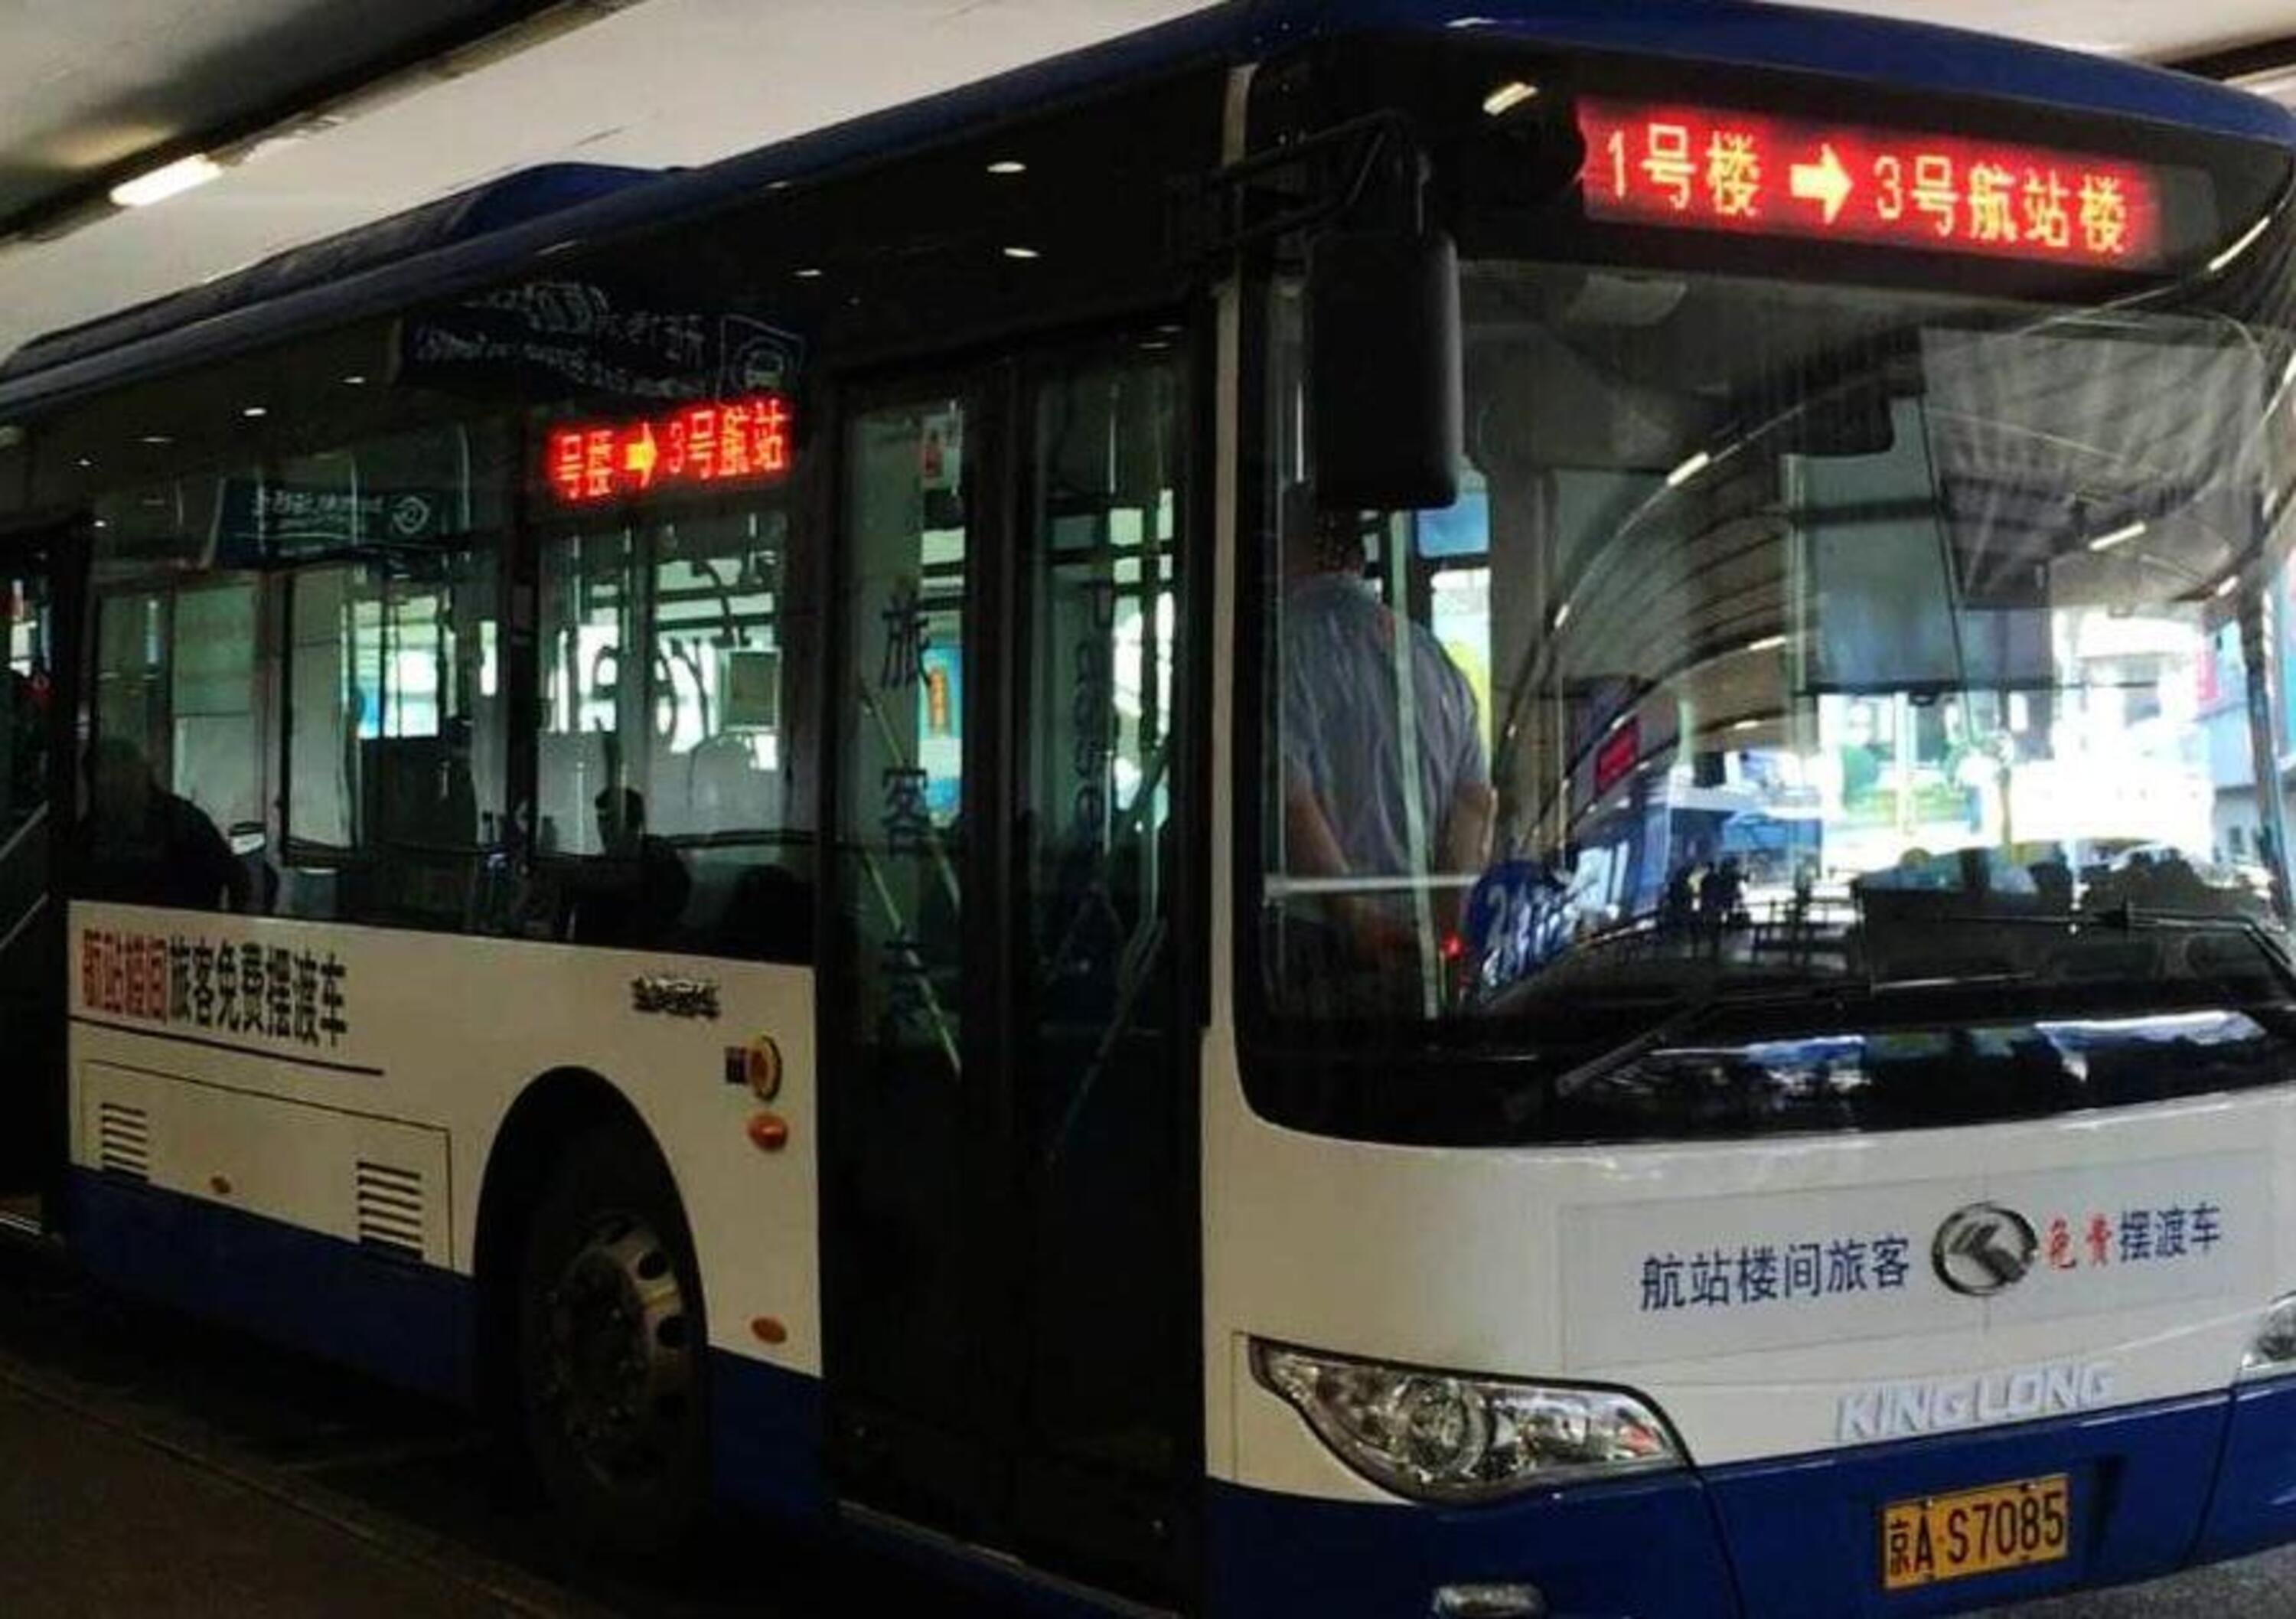 In Cina solo bus elettrici e ad idrogeno